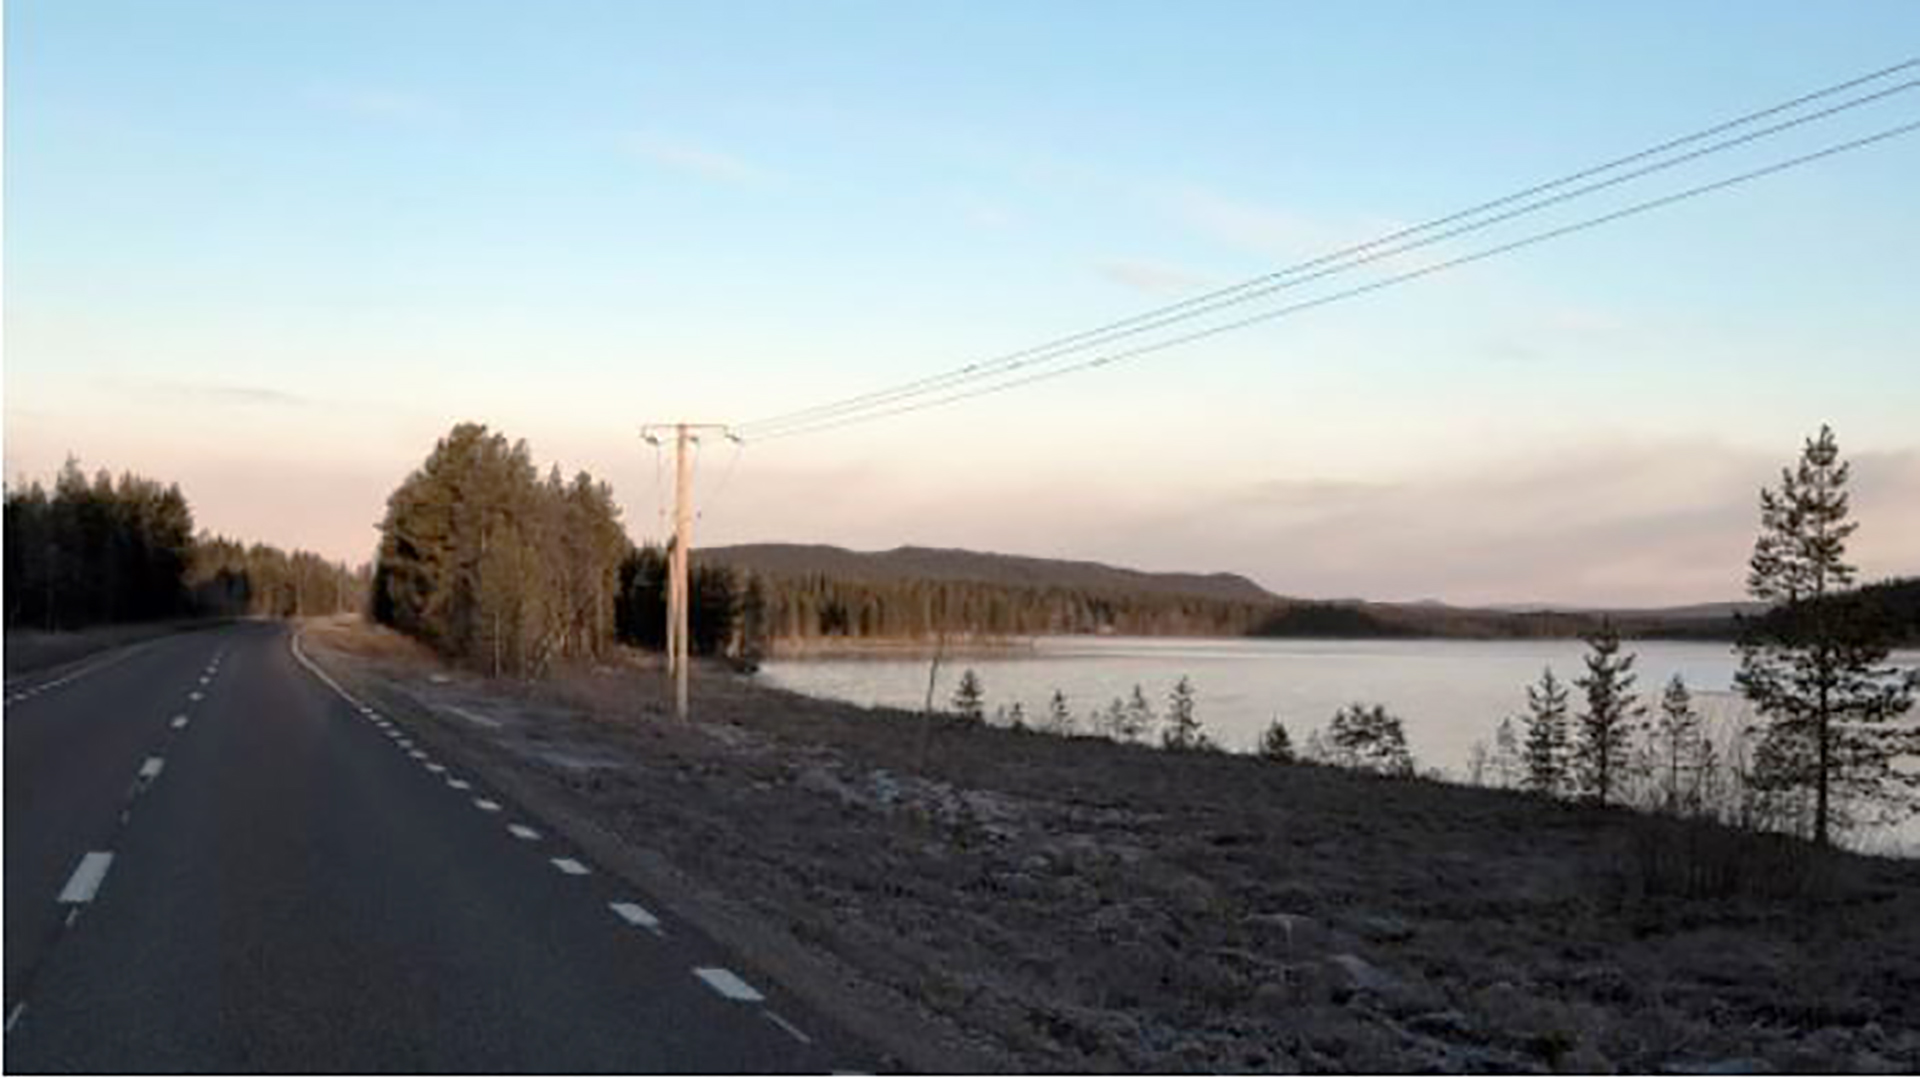 Landstraße, einfache Stromleitung, am See vorbeiführend in Schweden